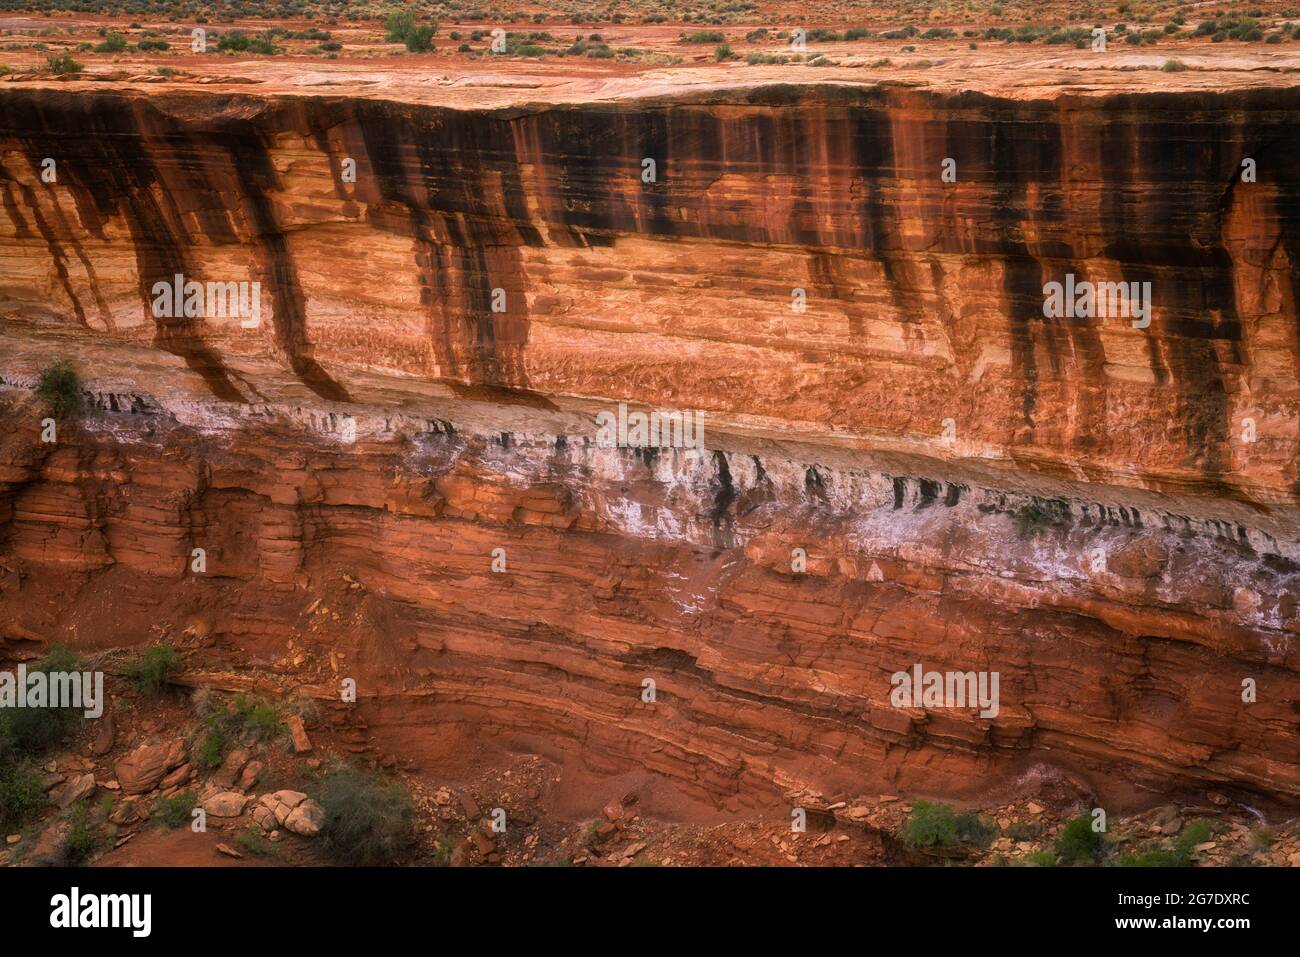 Einzigartige Muster von Wüstenlack bedecken viele der Canyon-Wände entlang der abgelegenen White Rim Road im Canyonlands National Park in Utah. Stockfoto